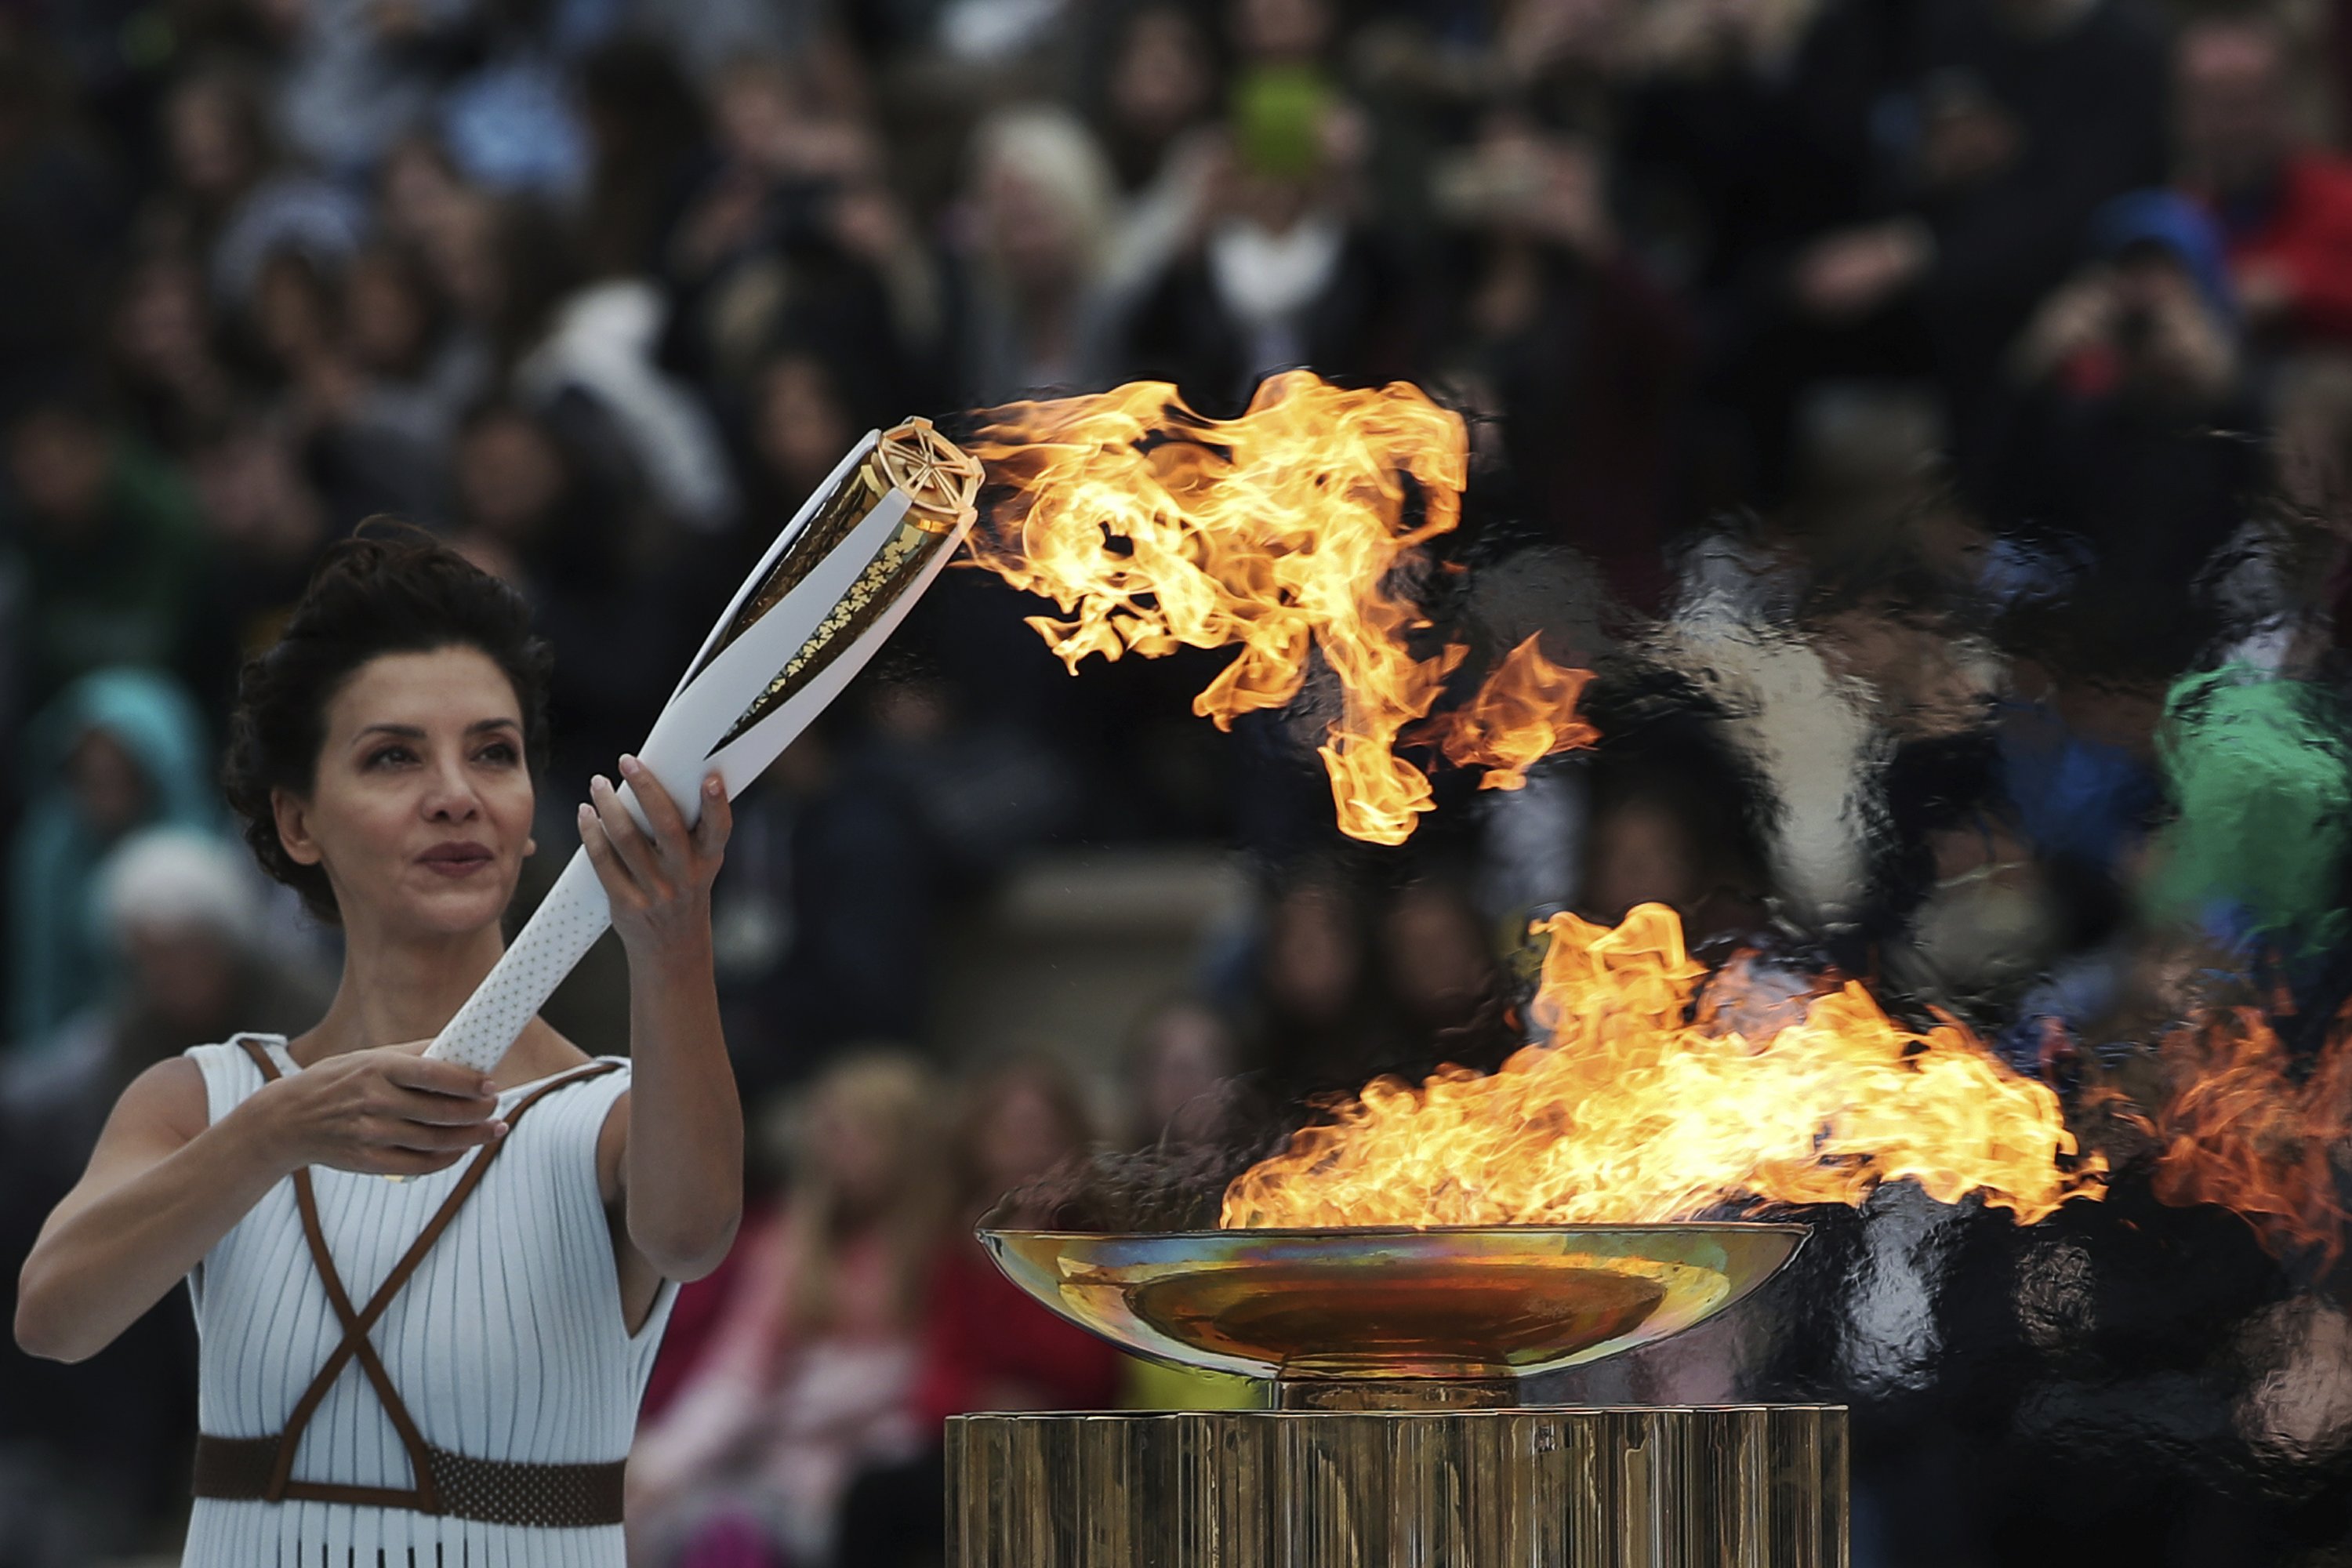 Олимпийский огонь современных игр зажигается. Олимпийский огонь. Зажжение олимпийского огня. Олимпийский факел. Факел олимпийского огня.